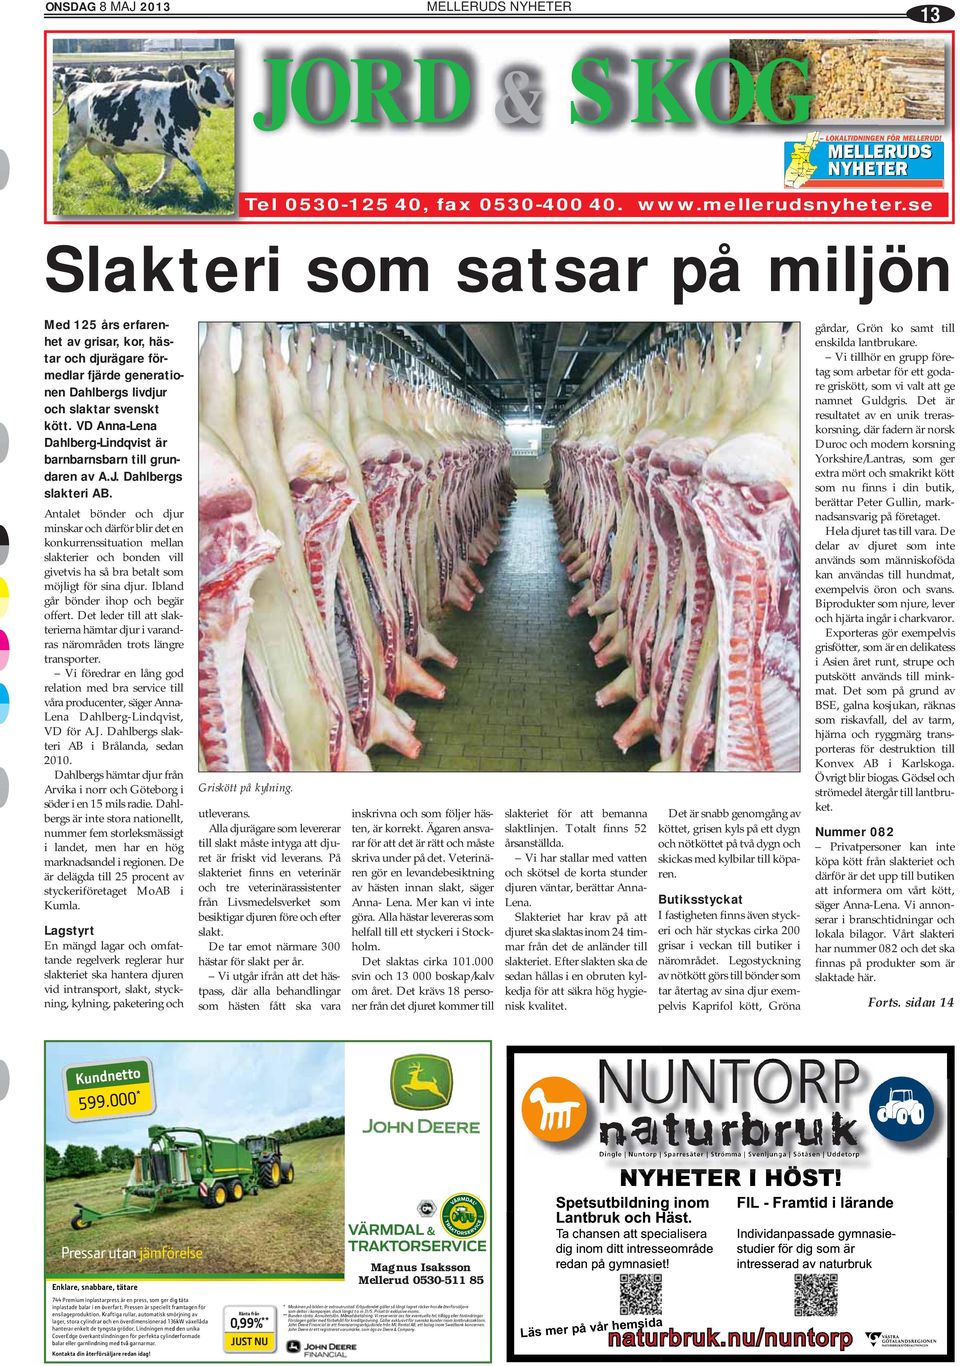 Dahlbergs slakteri AB. Antalet bönder och djur minskar och därför blir det en konkurrenssituation mellan slakterier och bonden vill givetvis ha så bra betalt som möjligt för sina djur.